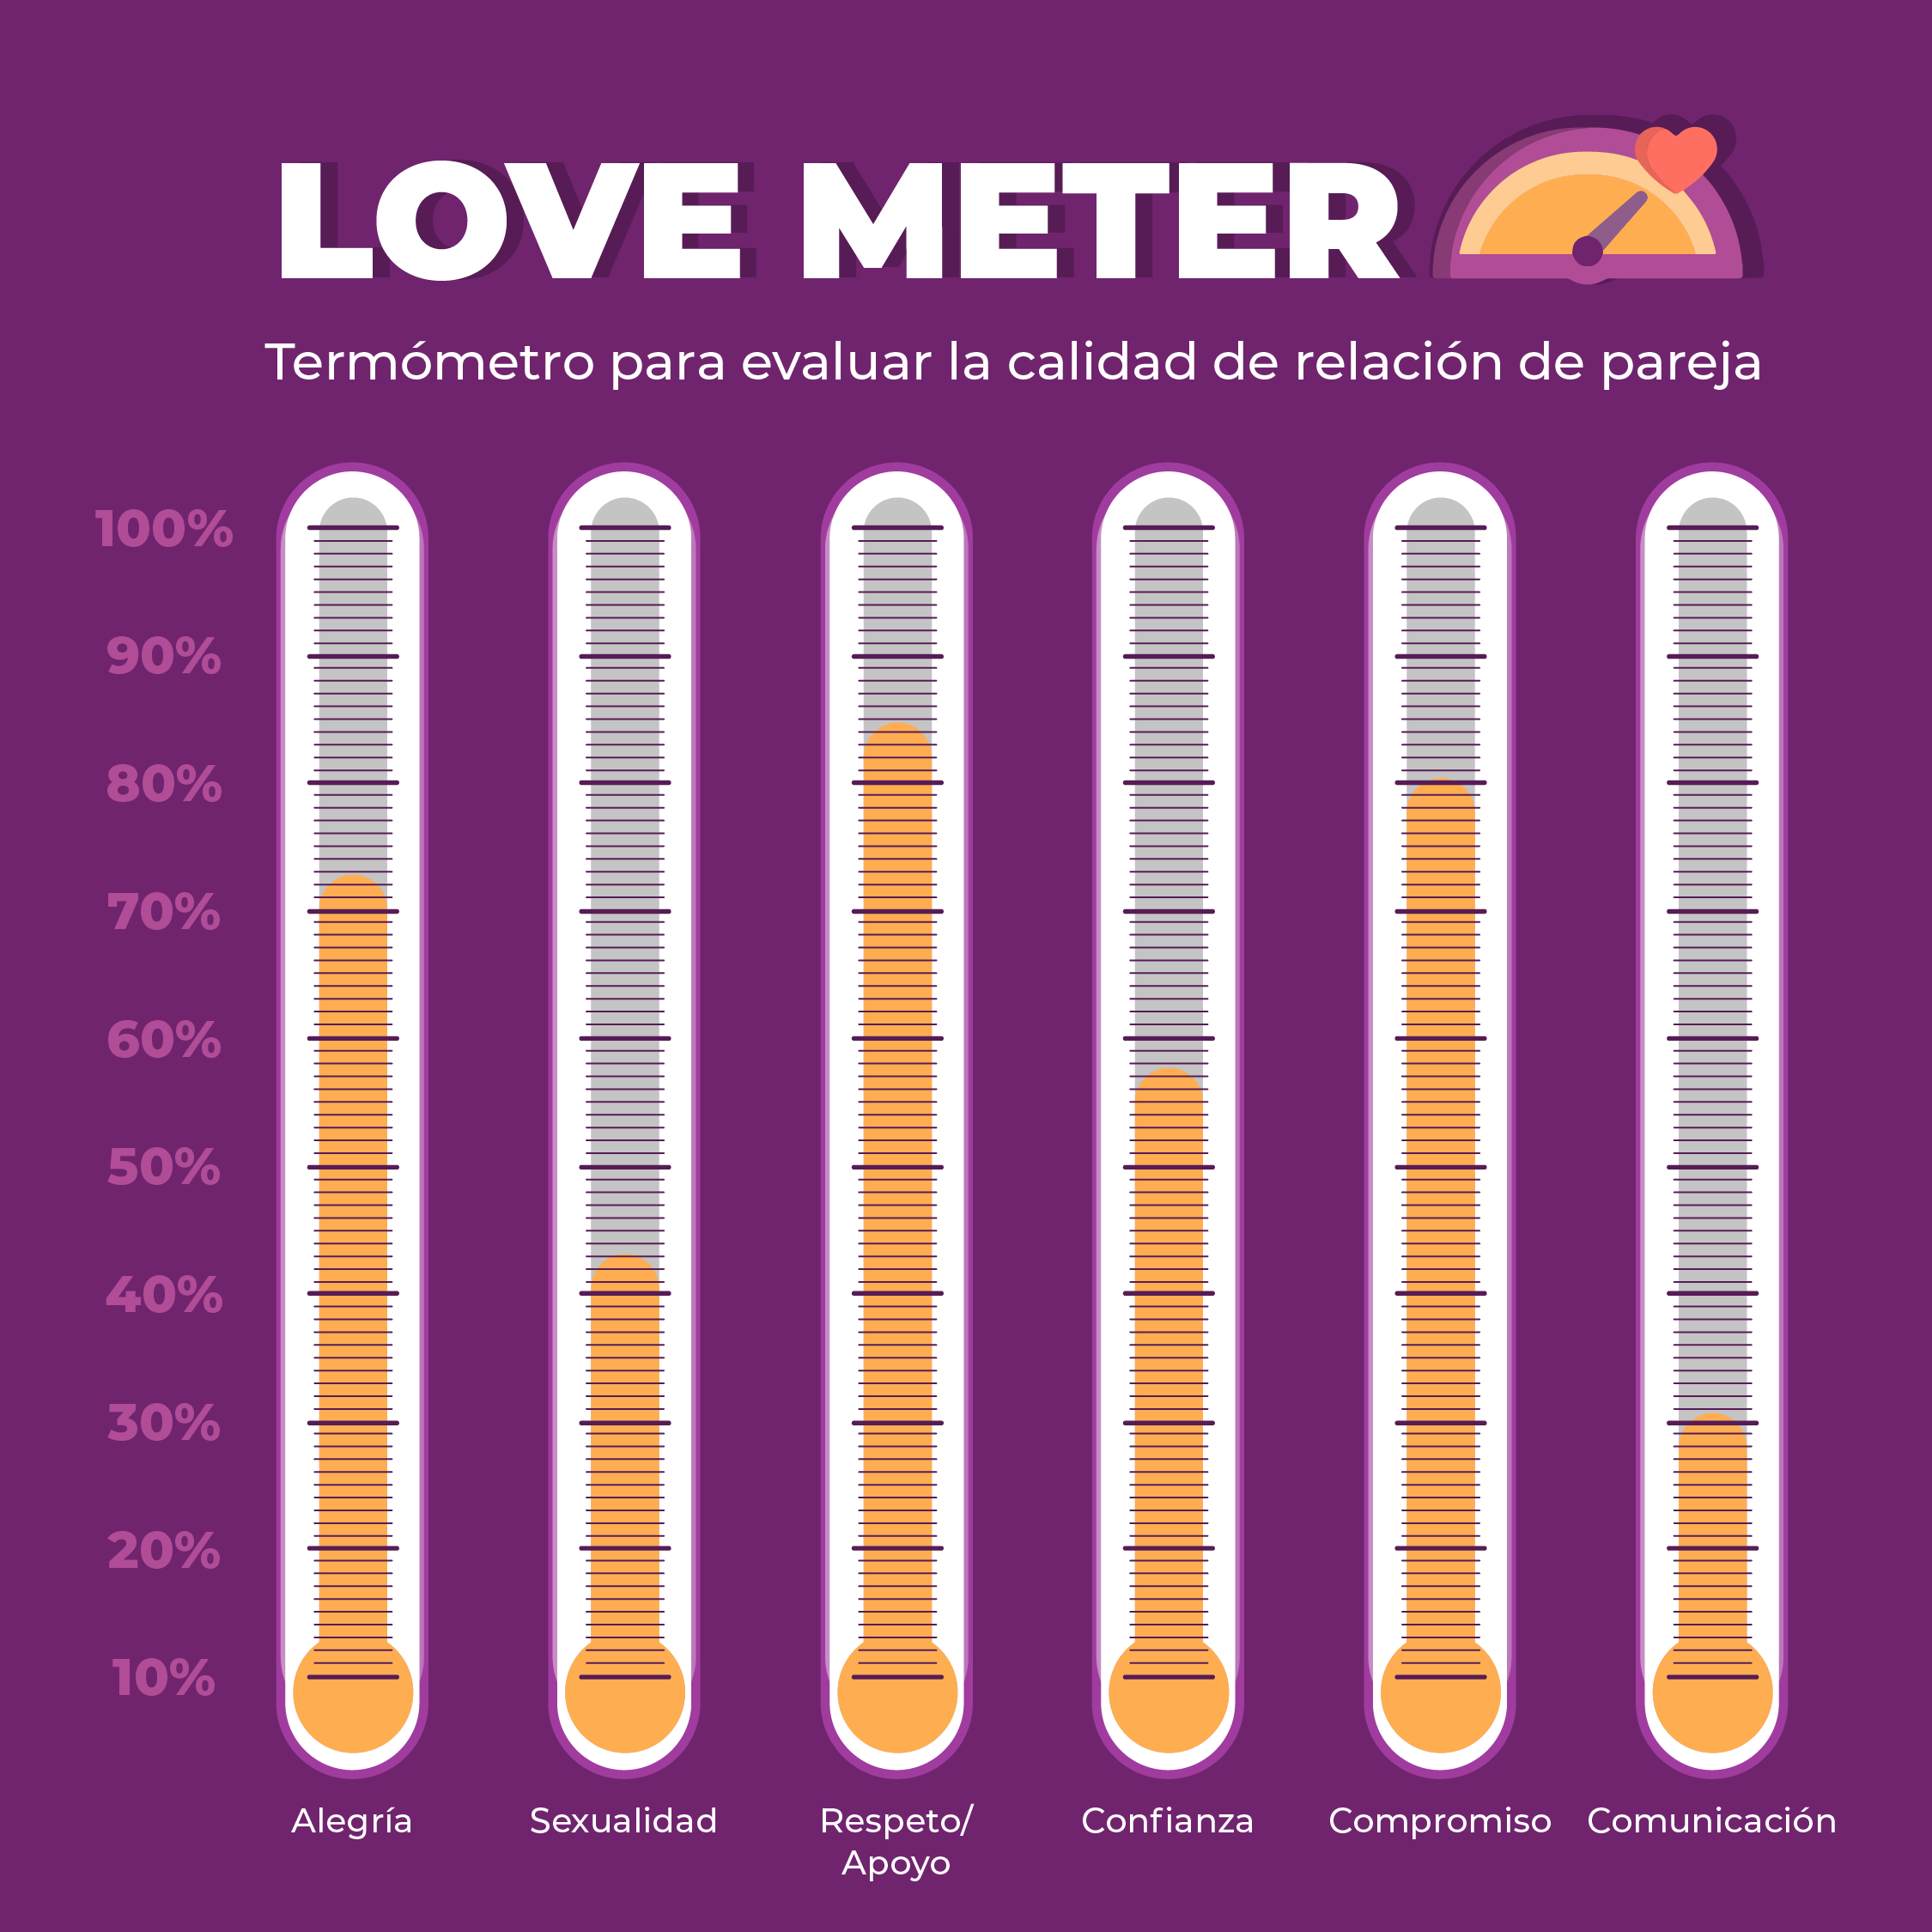 Love meter (Termómetro paraa evaluar relación pareja)-01-01